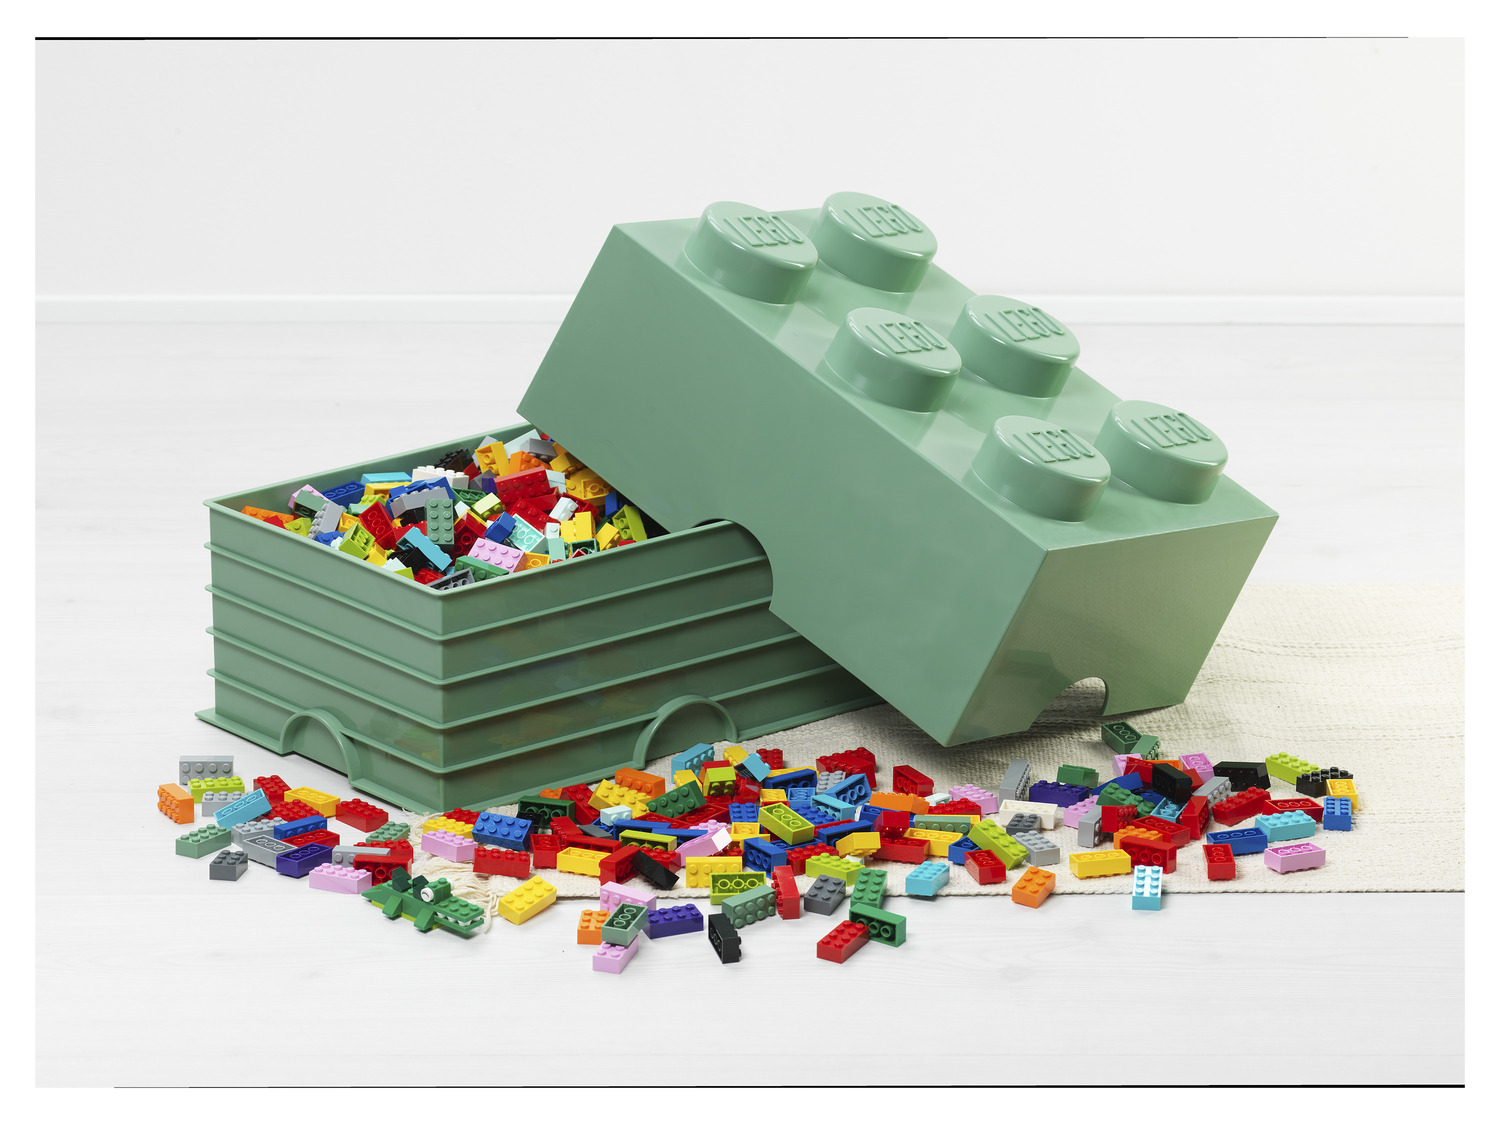 Promo Boîtes de rangement LEGO empilables chez Lidl